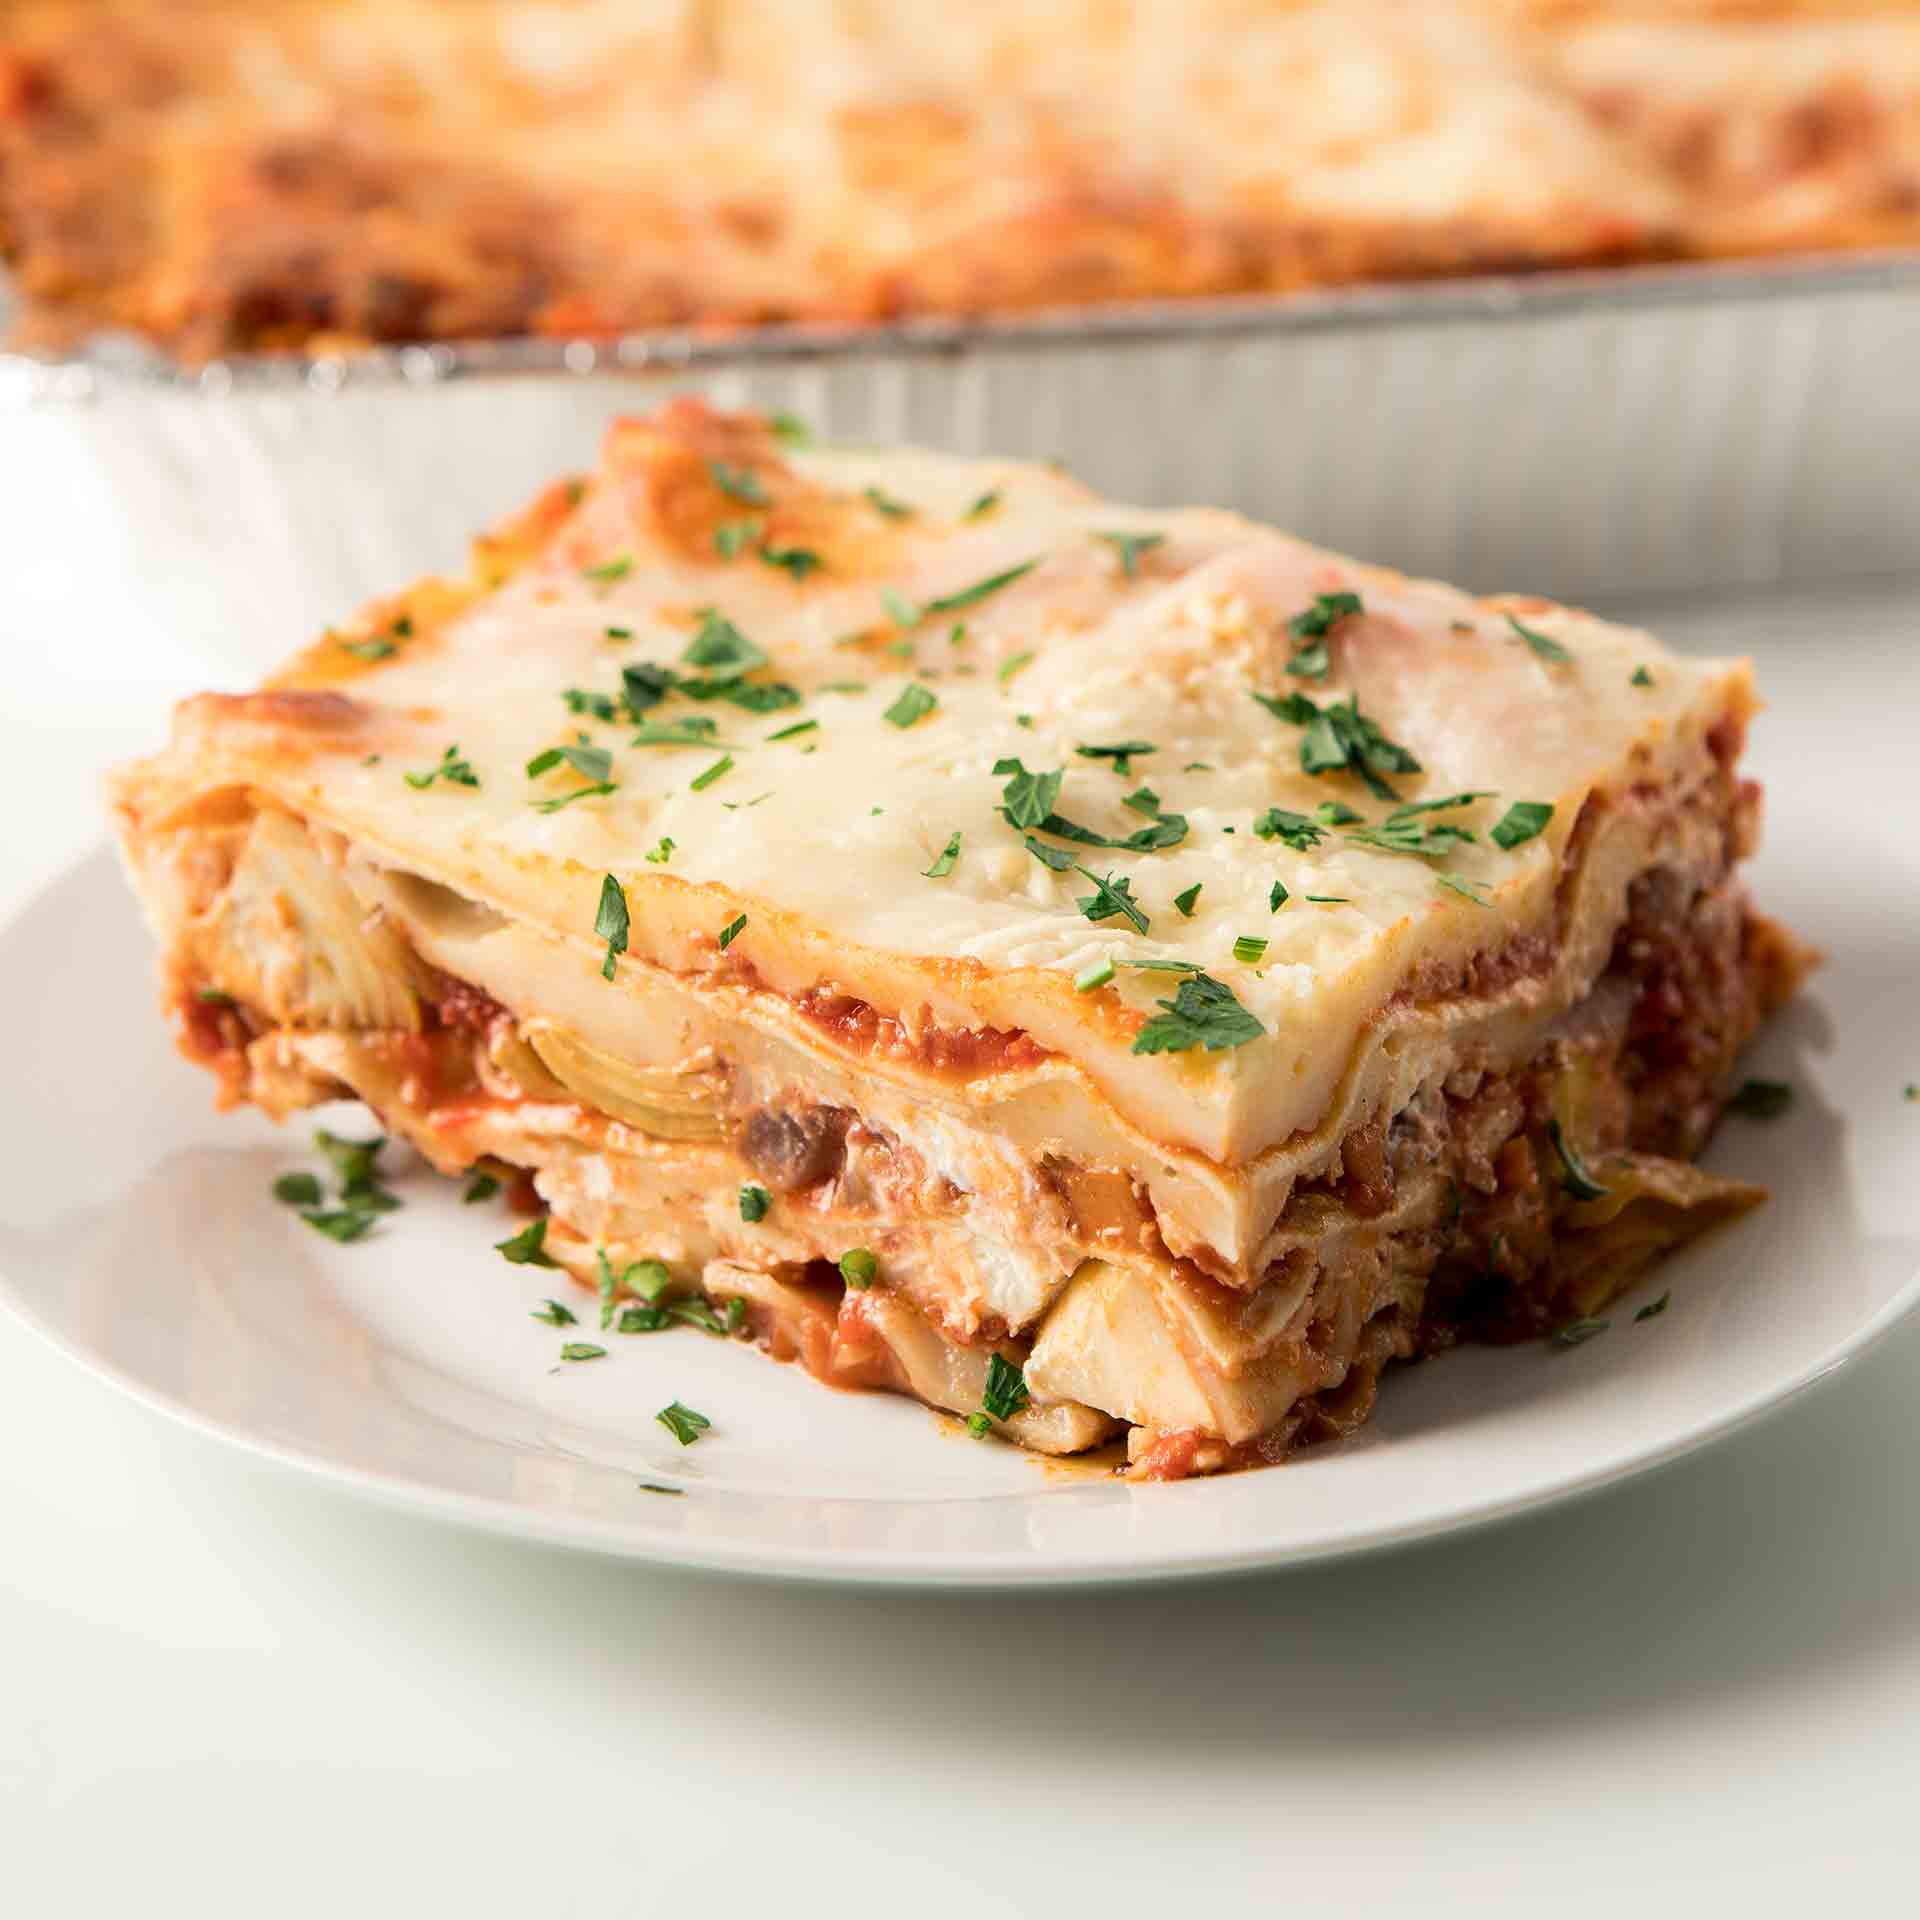 Artichoke Lasagna - HOT